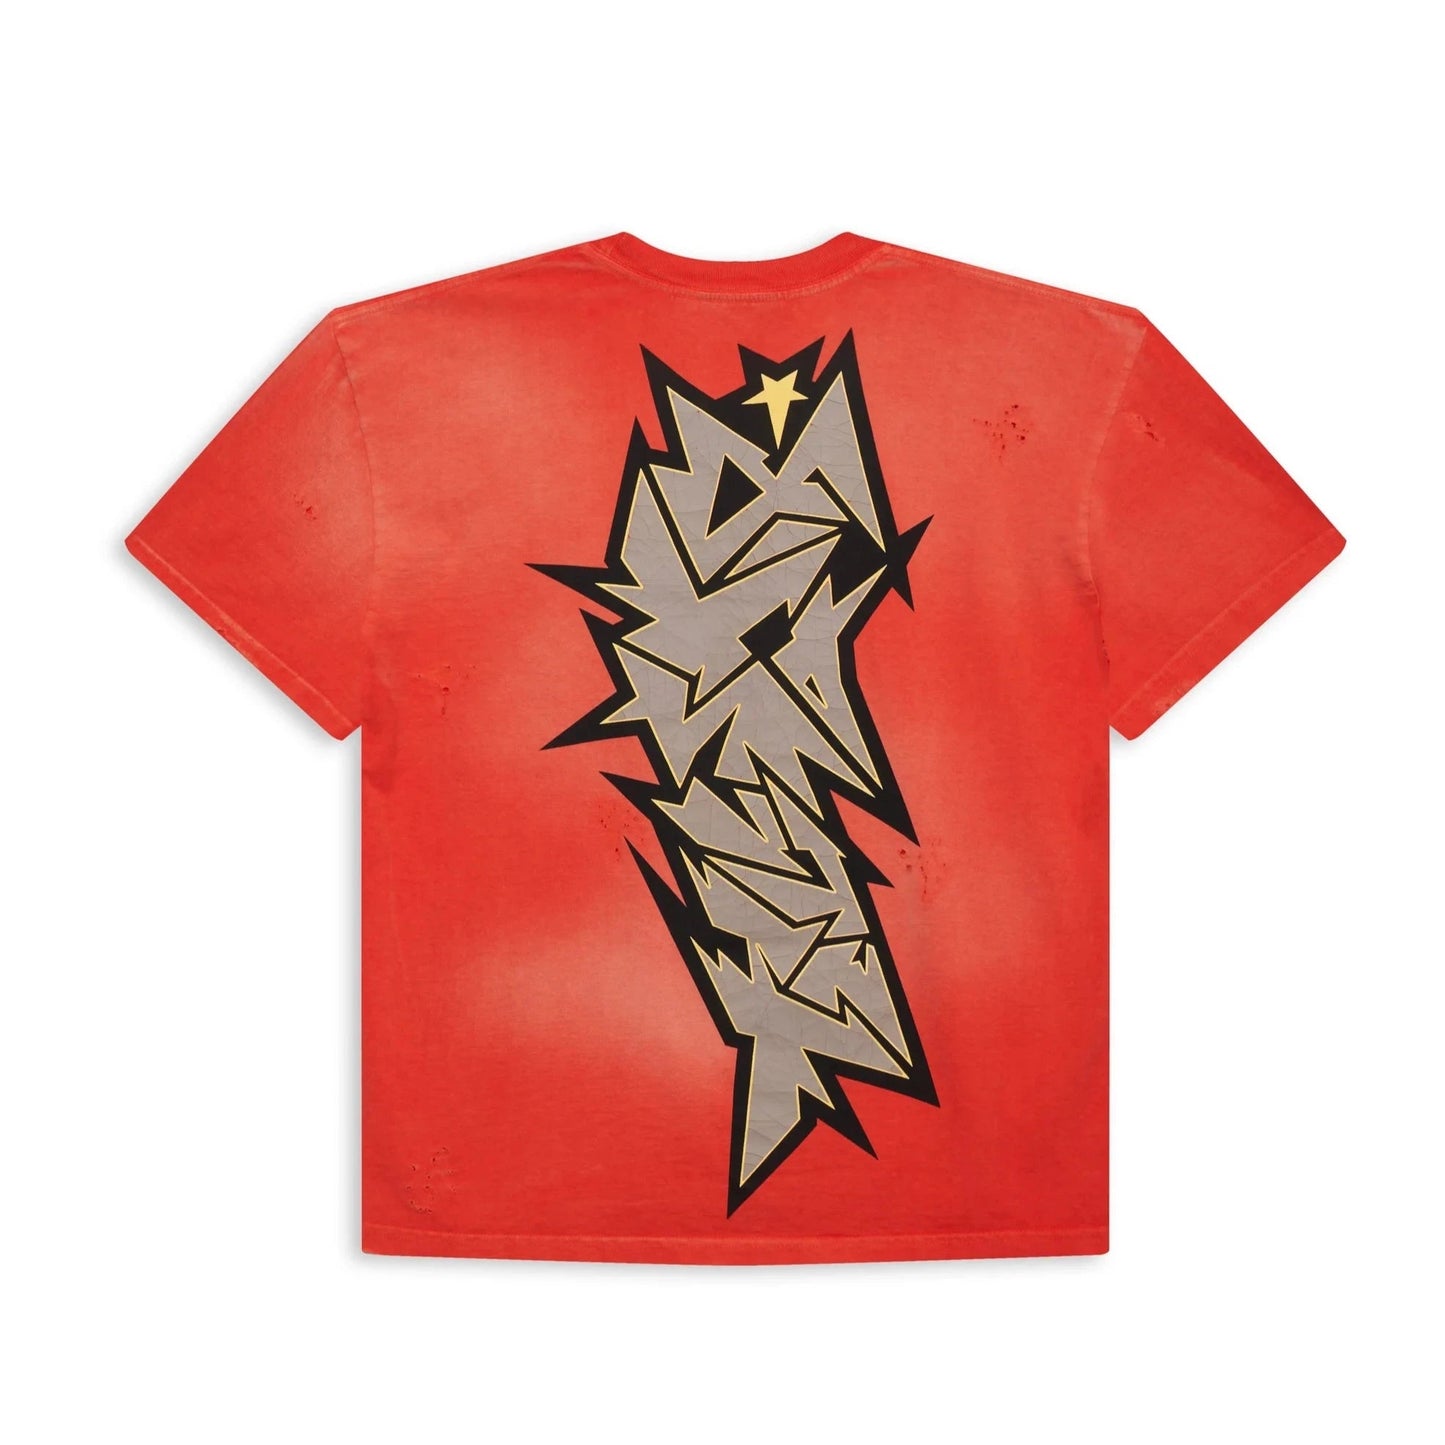 Hellstar Sports Red Crack Print T-Shirt - Sneakersbe Sneakers Sale Online